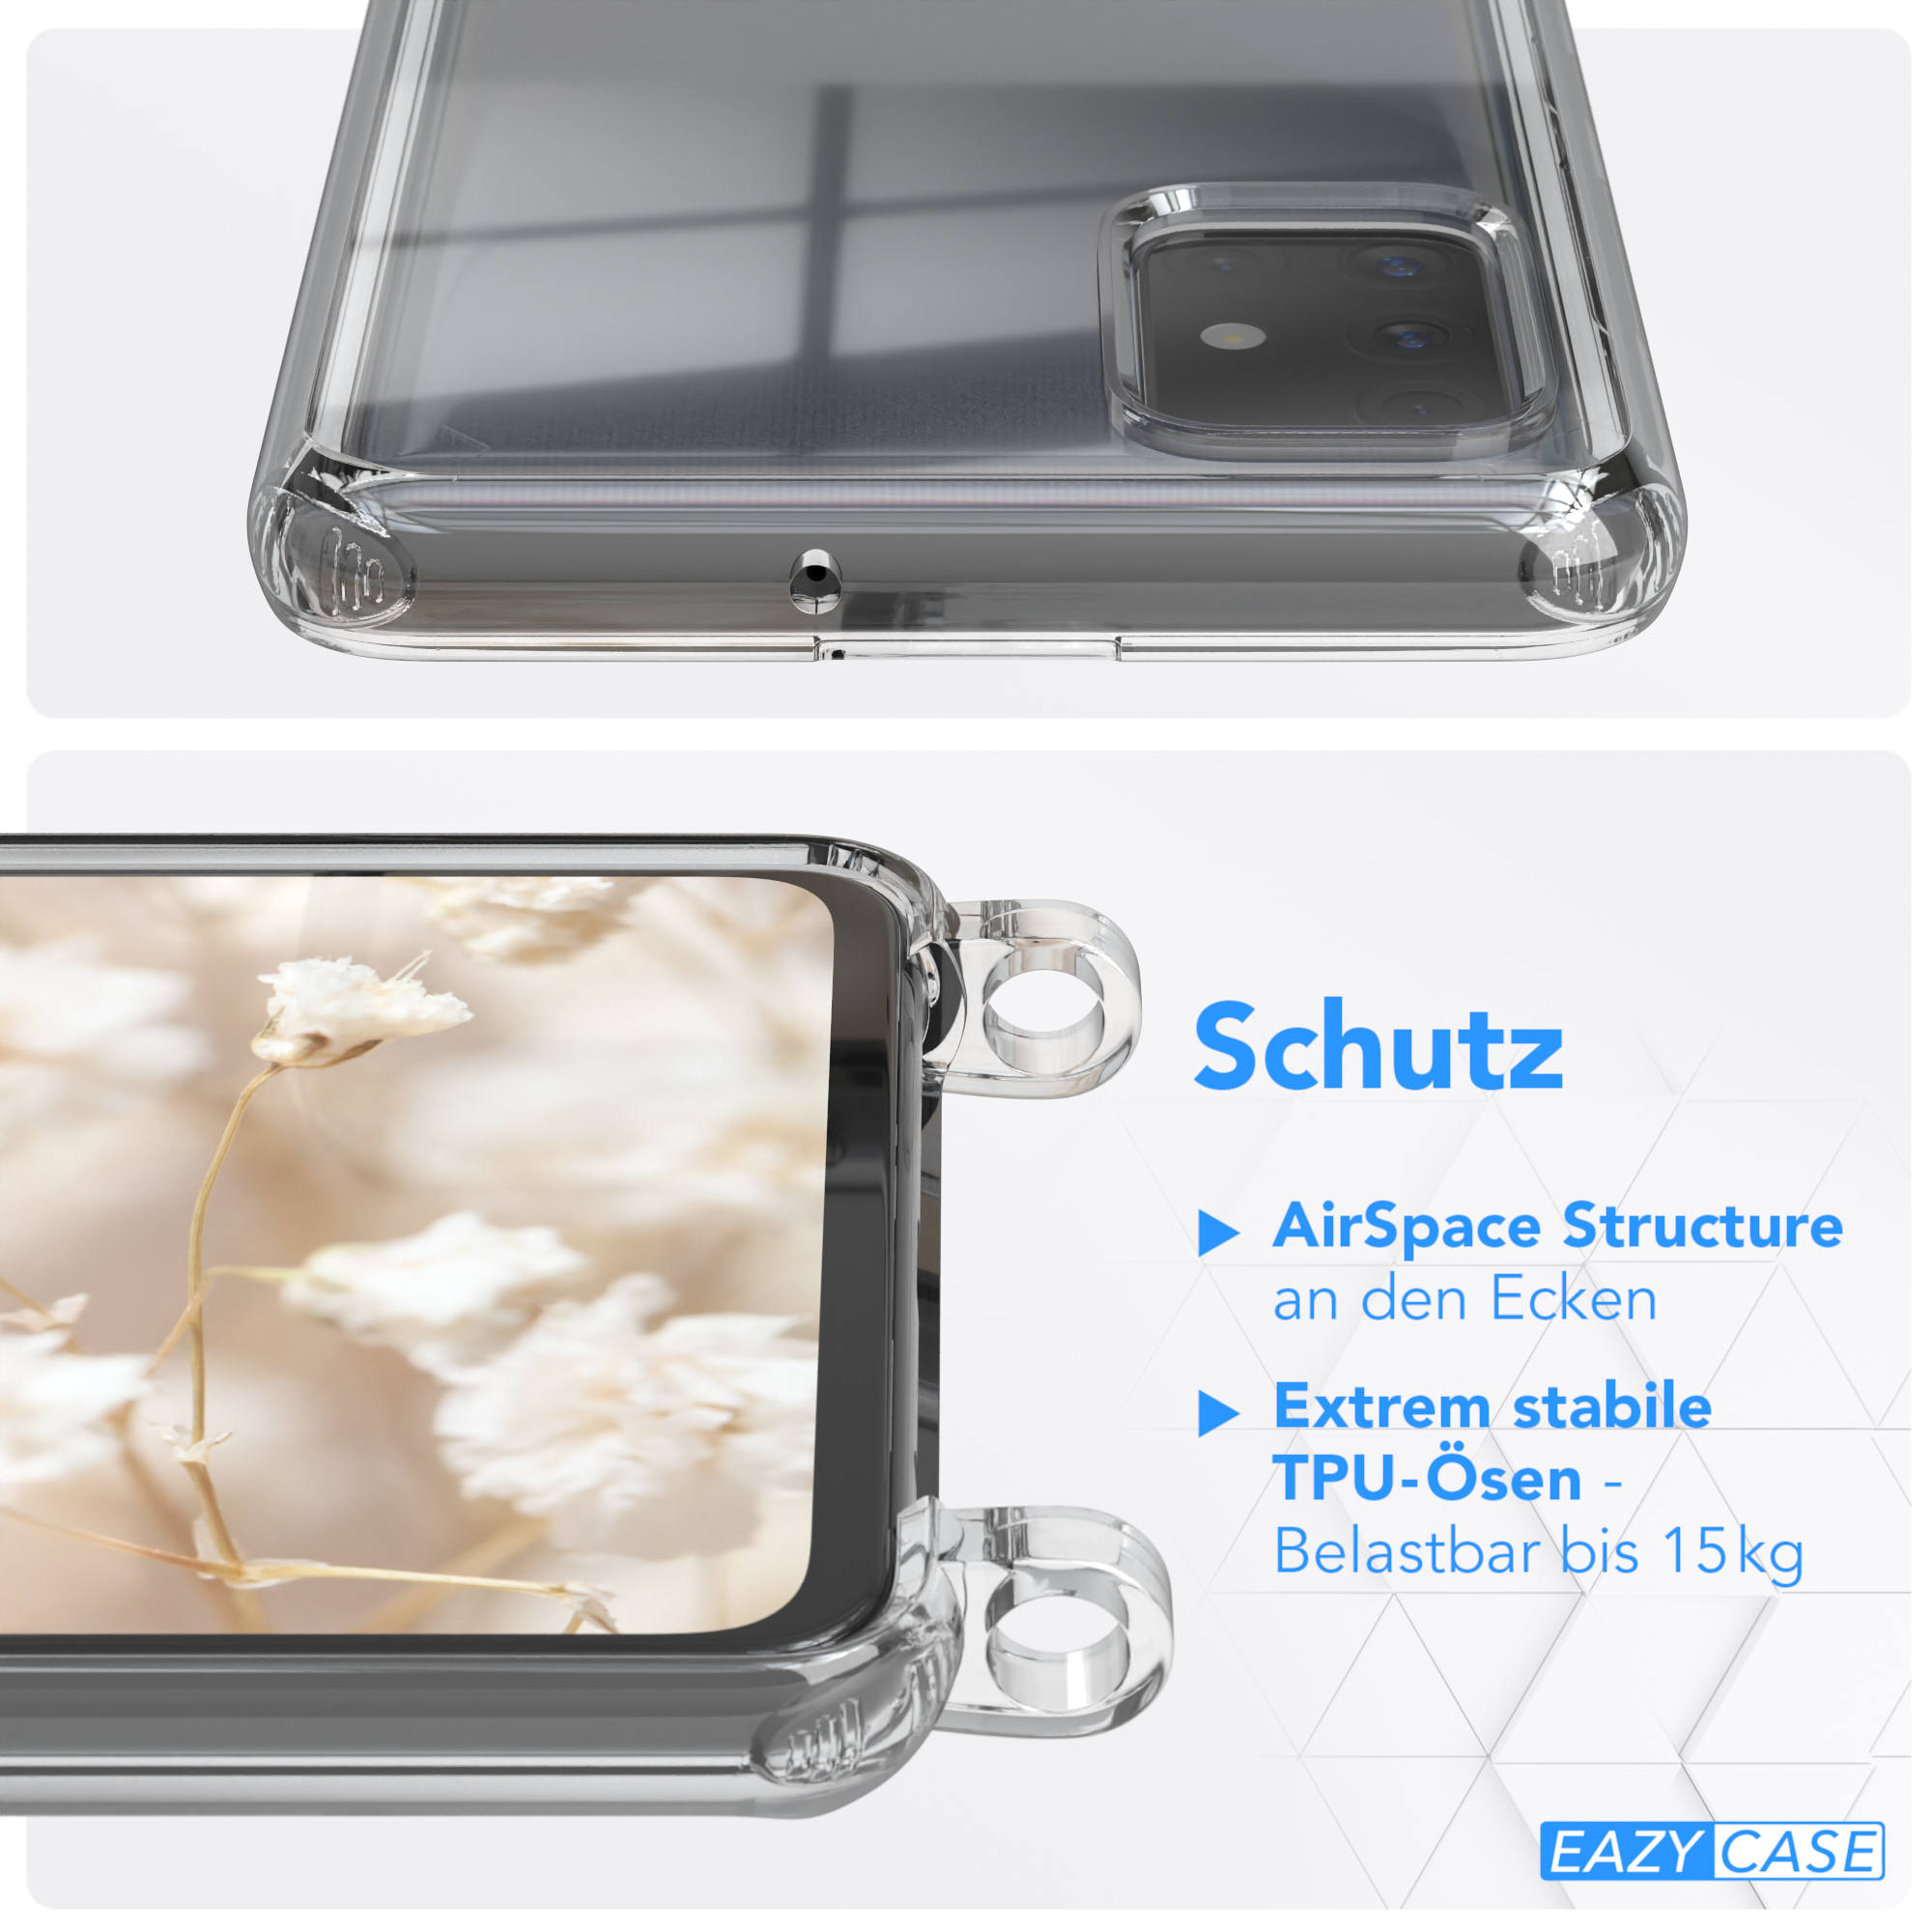 Handyhülle Samsung, Boho A51, Grün / mit EAZY Galaxy Umhängetasche, Violett Style, CASE Kordel Transparente